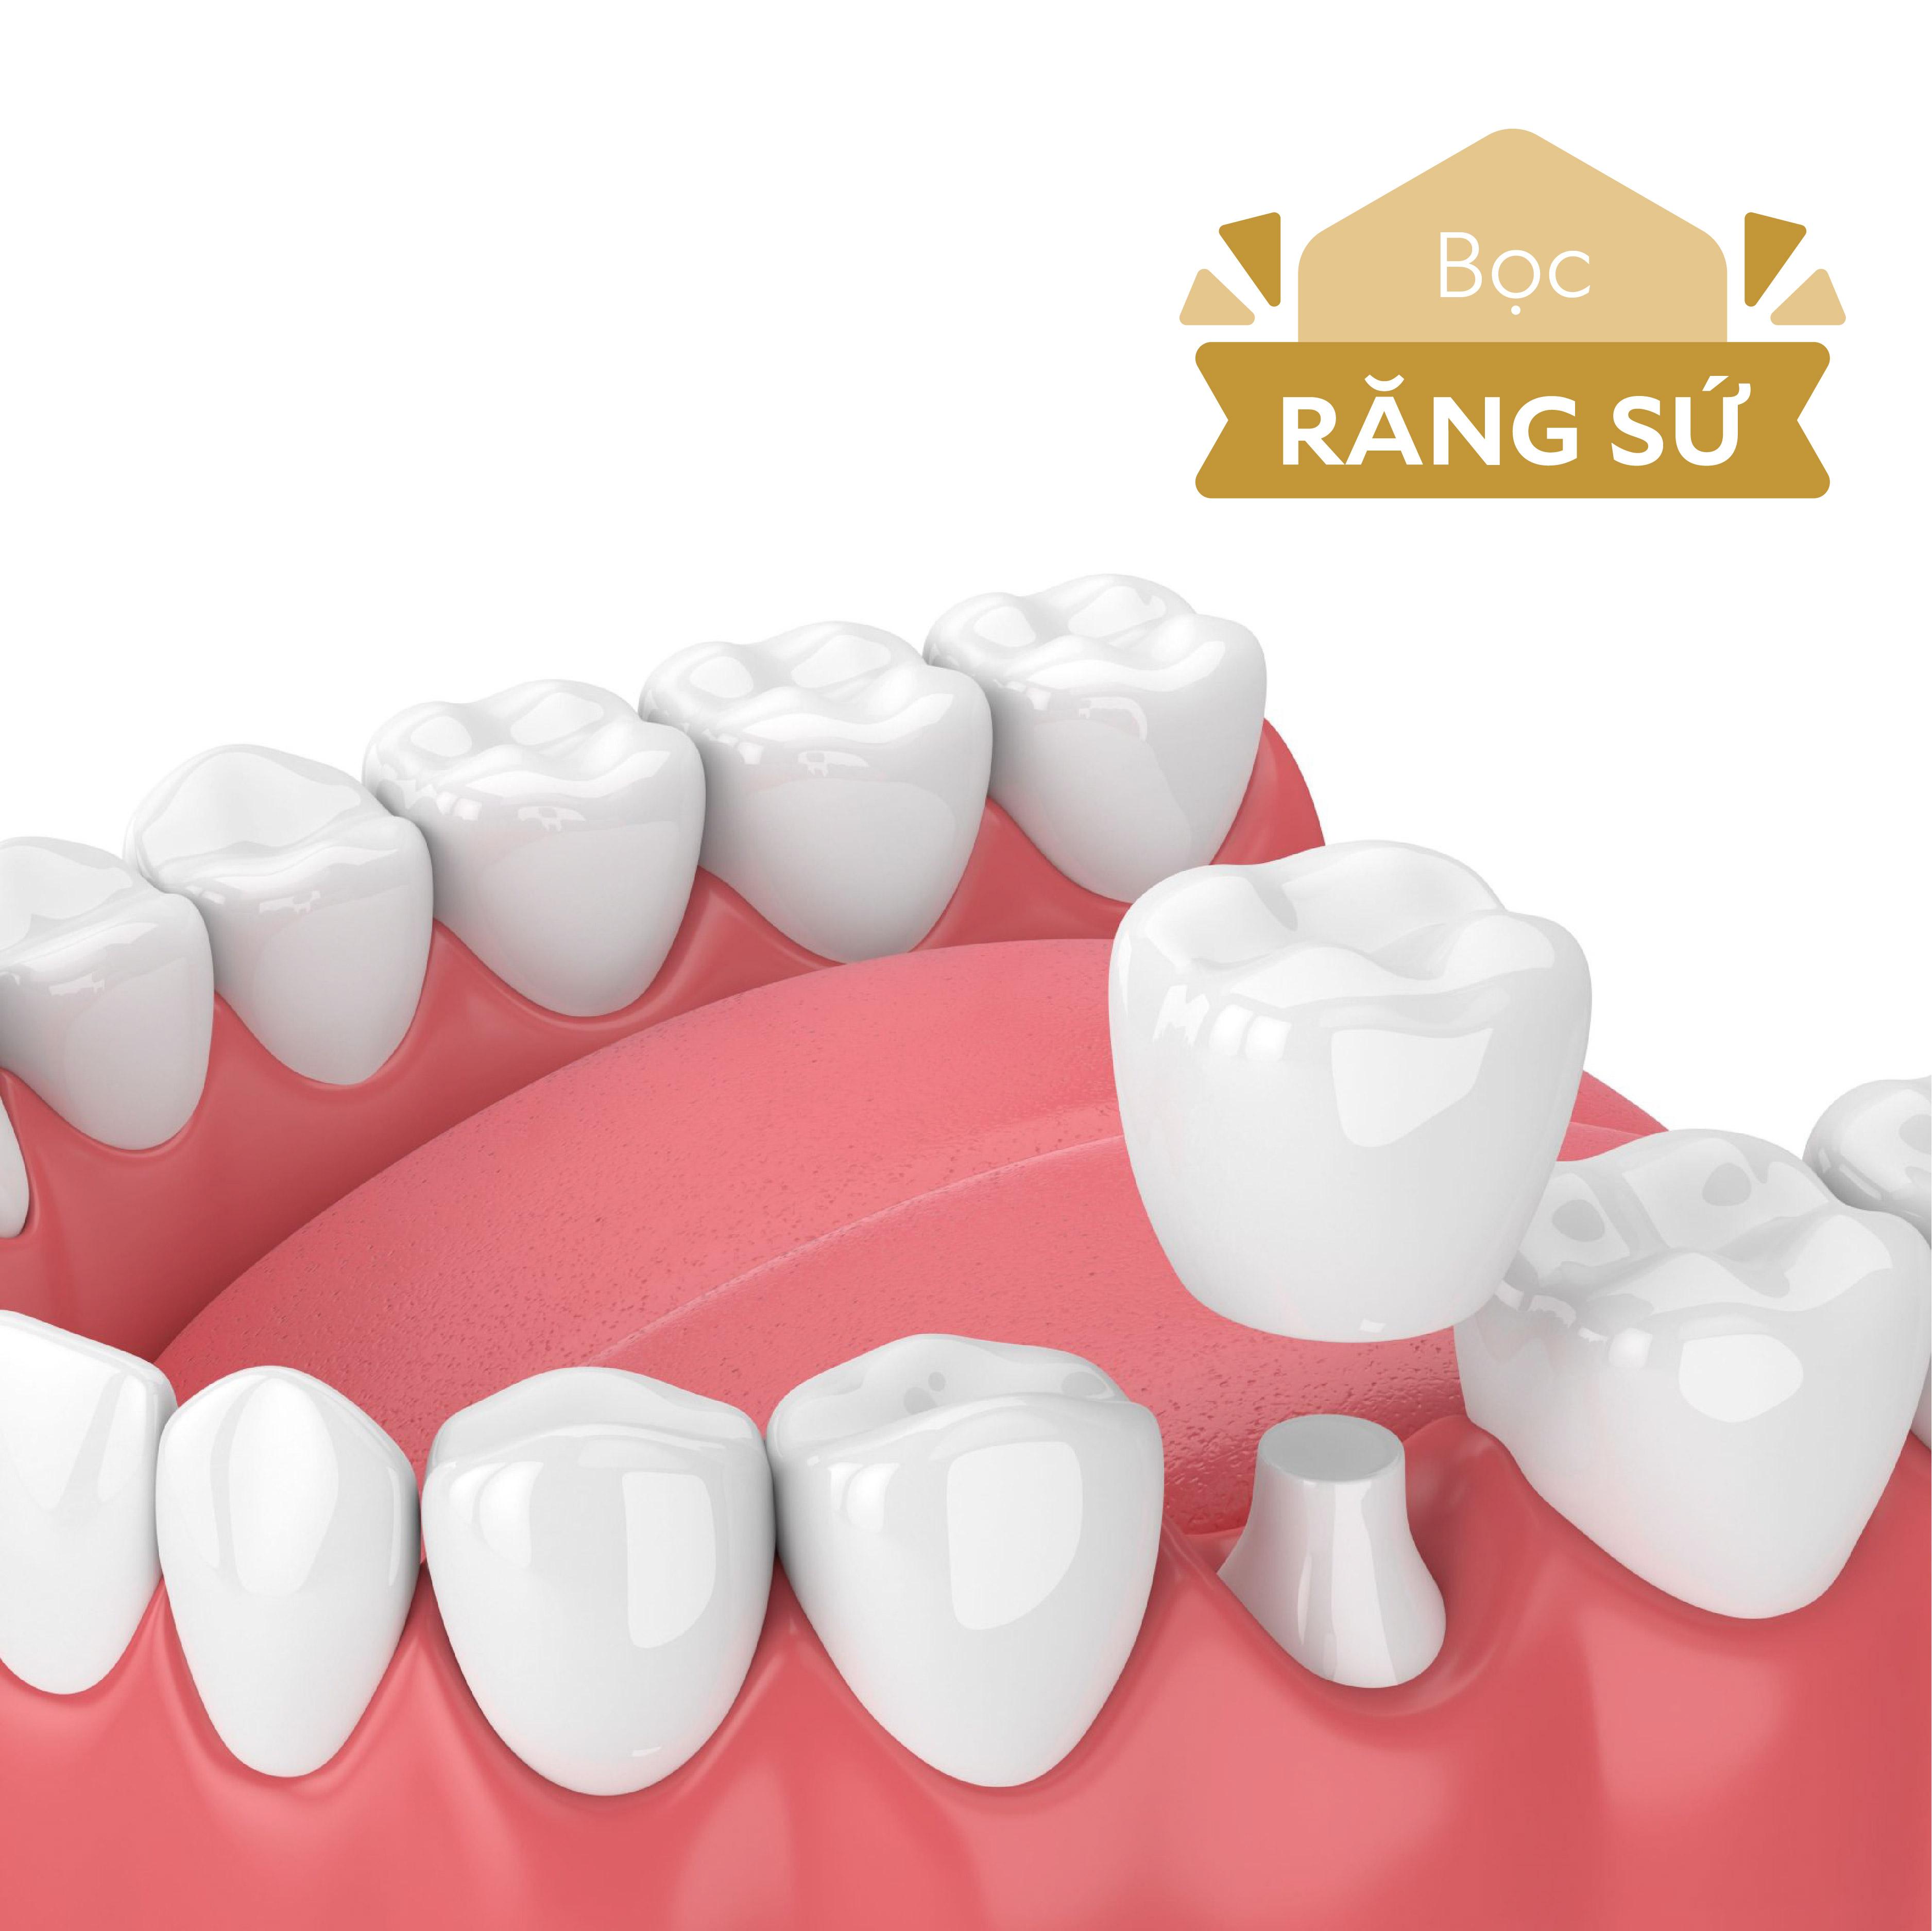 Bọc răng sứ áp dụng cho các vấn đề răng như: răng đen sậm, ố vàng, răng bị sứt mẻ, sâu nặng hay bị mất gần như toàn bộ phần ngoài của răng, hô móm khớp cắn không tốt.